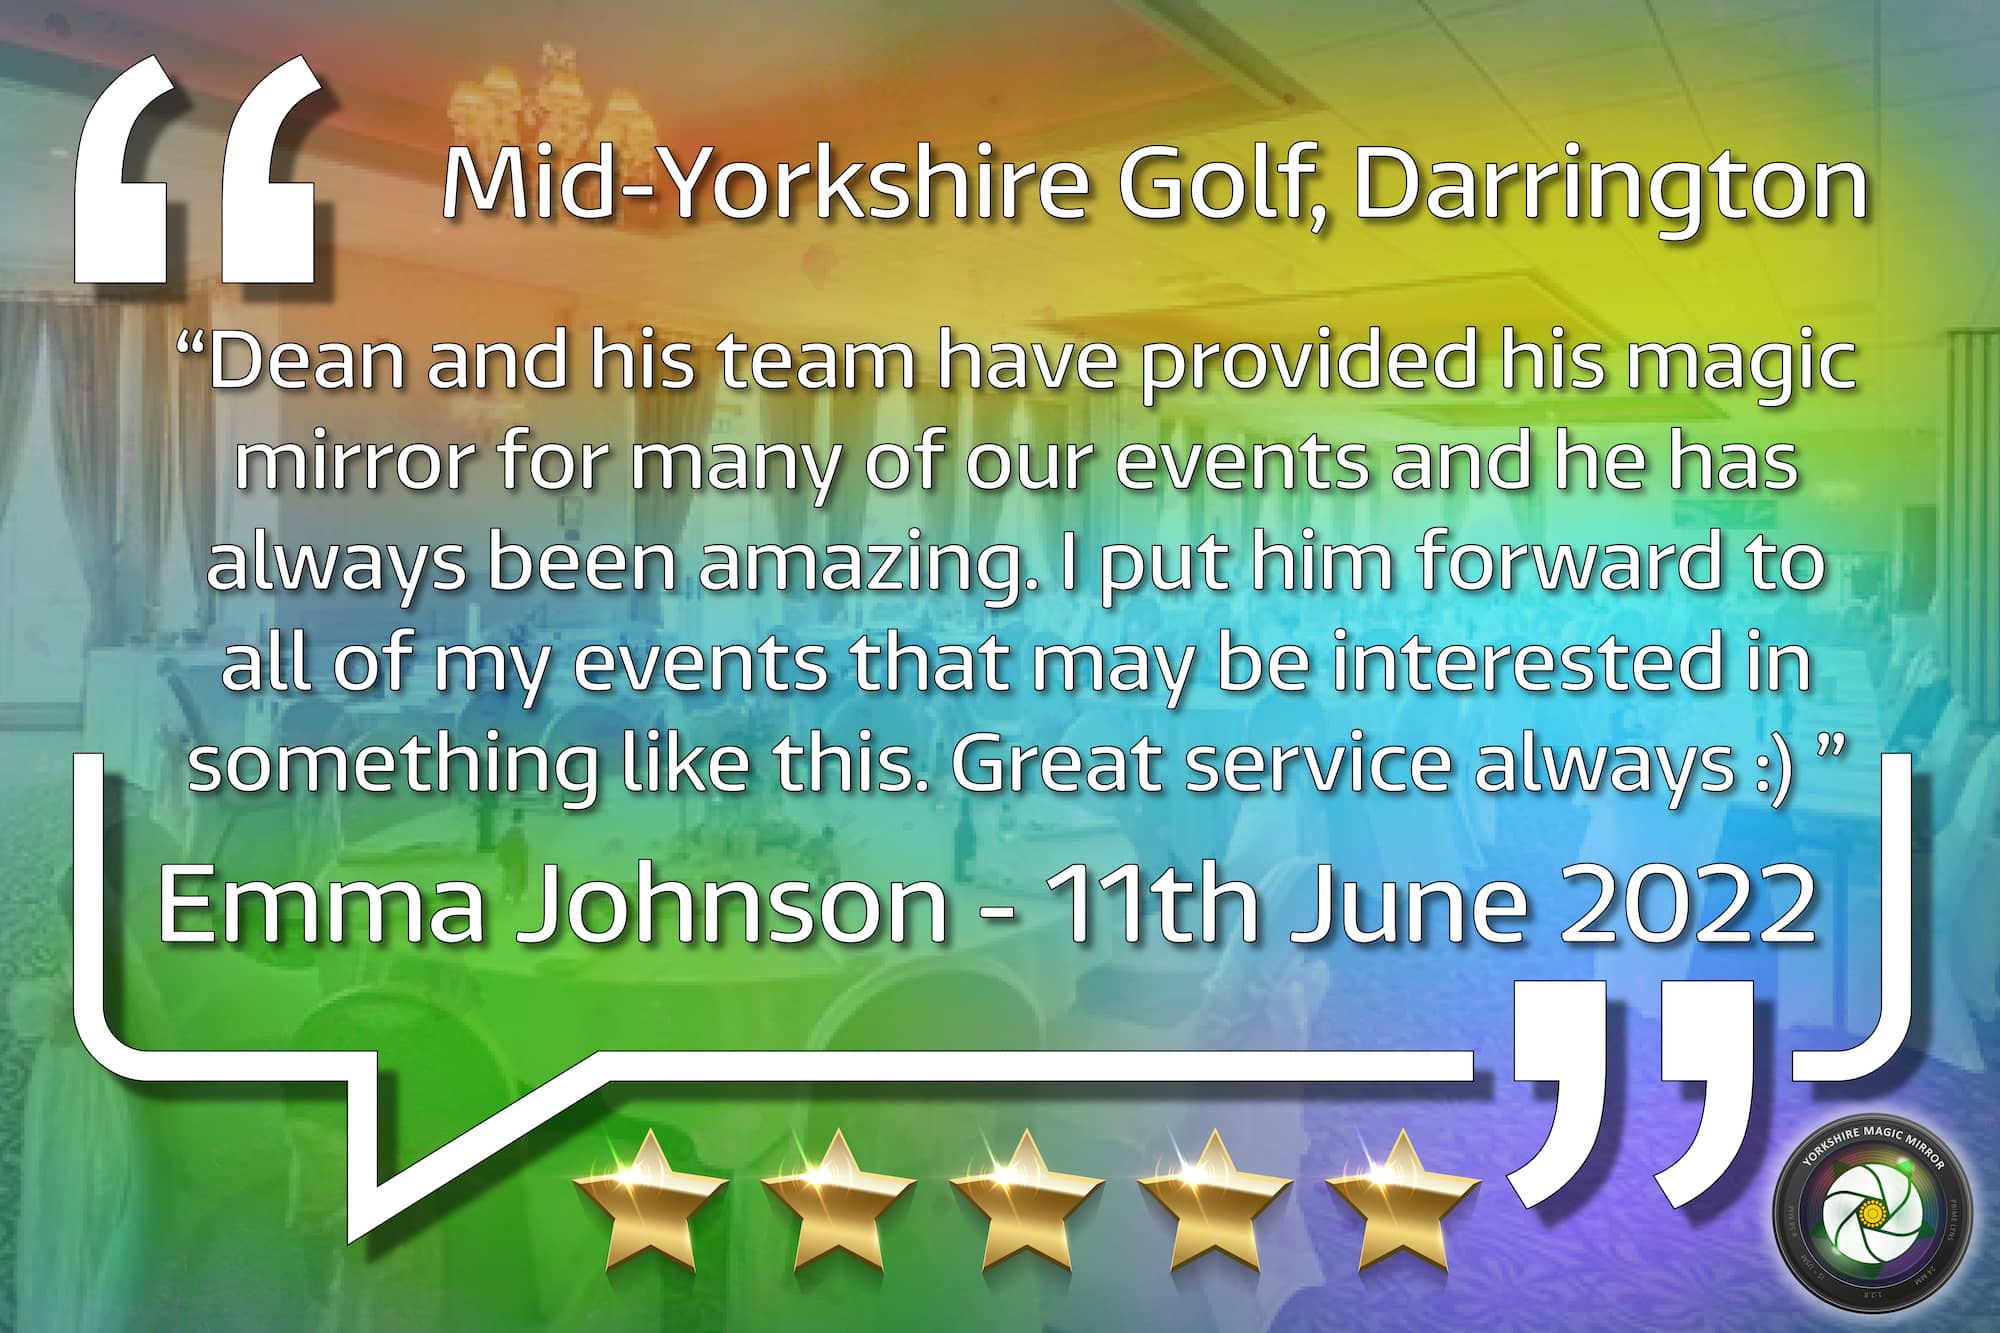 Darrington Golf Club Emma Johnson Wedding 2022